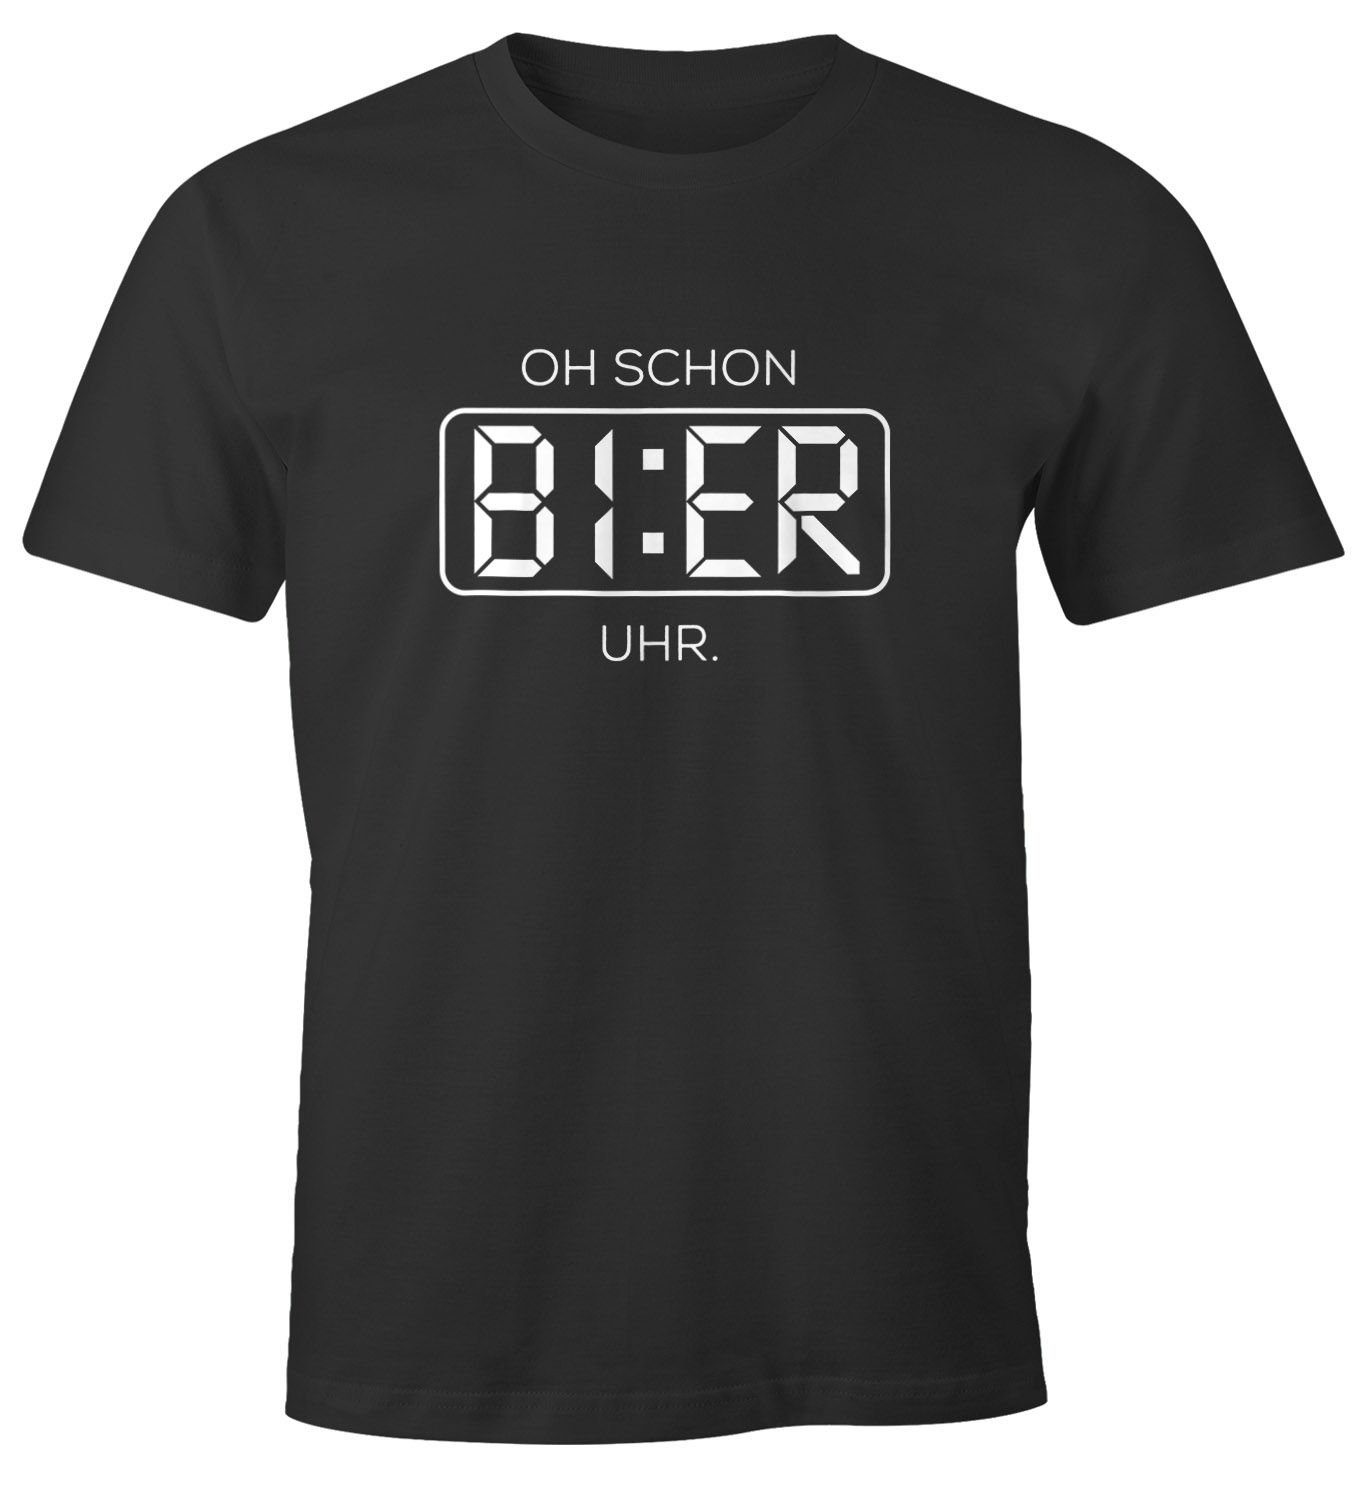 Saufen mit Moonworks® Trink Oh Print-Shirt Bier T-Shirt lustiges MoonWorks Herren Shirt Uhr Bier Print Party schon